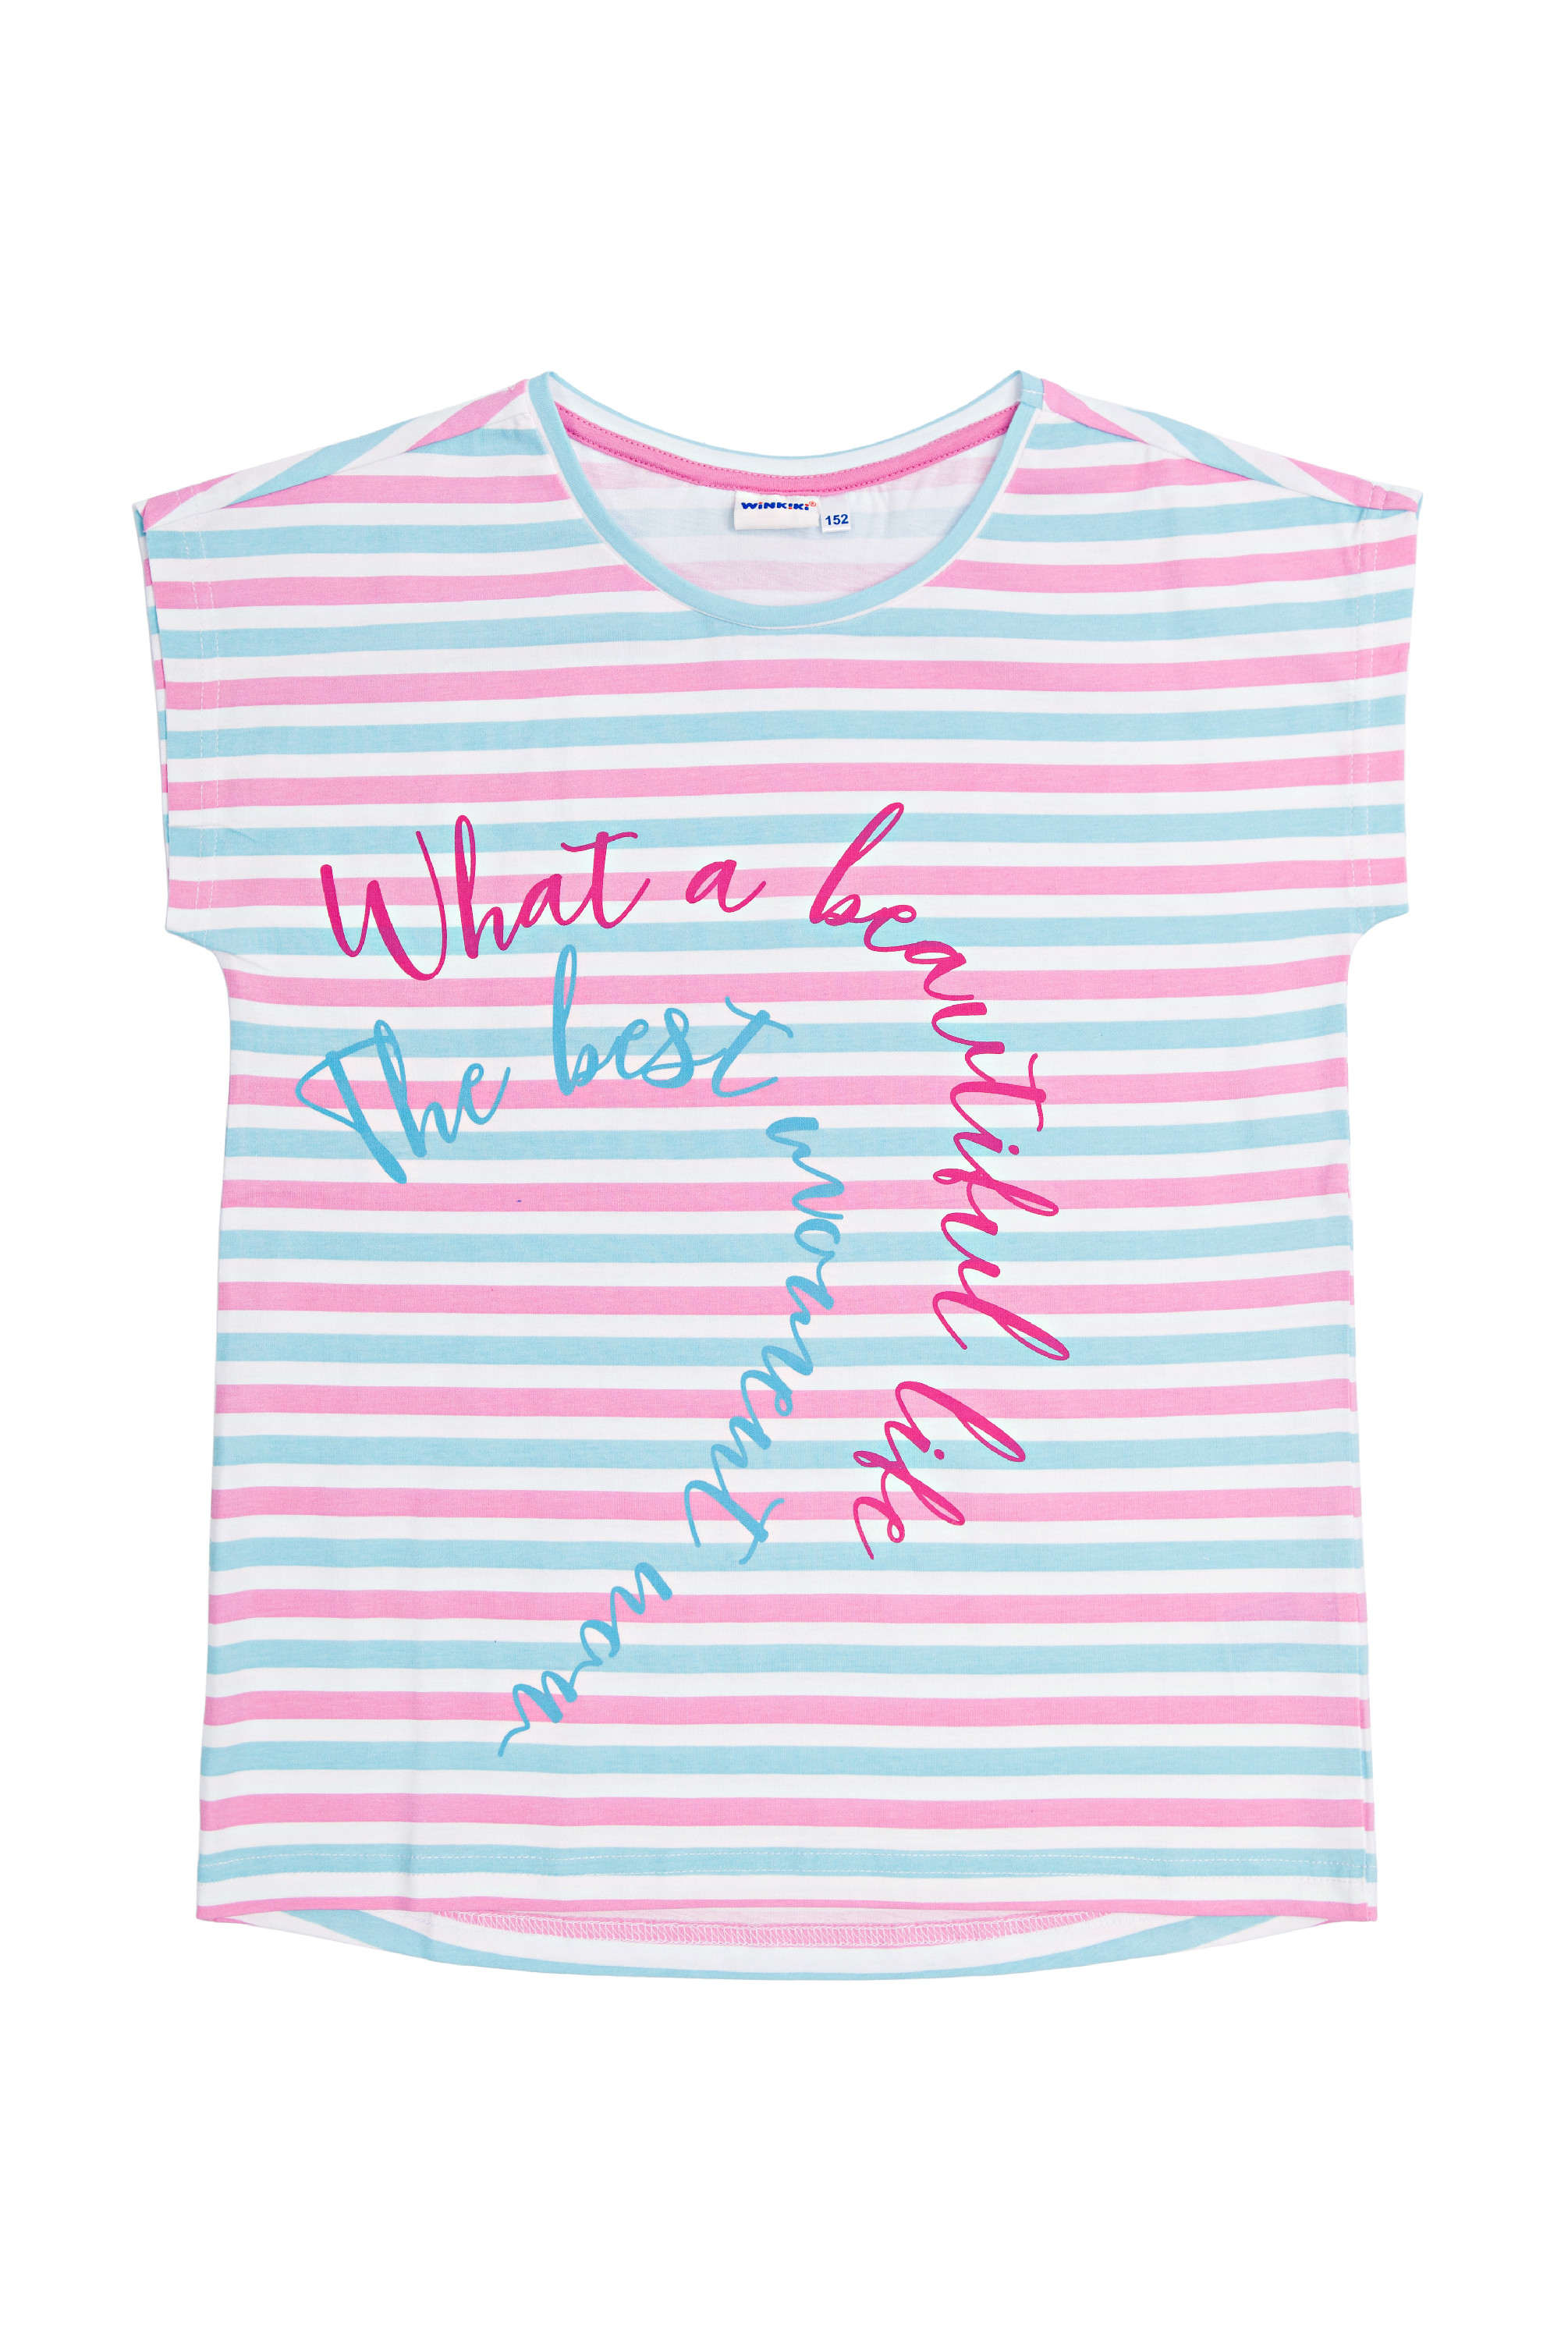 Dívčí triko - Winkiki WTG 01799, růžová / proužek Barva: Růžová, Velikost: 164